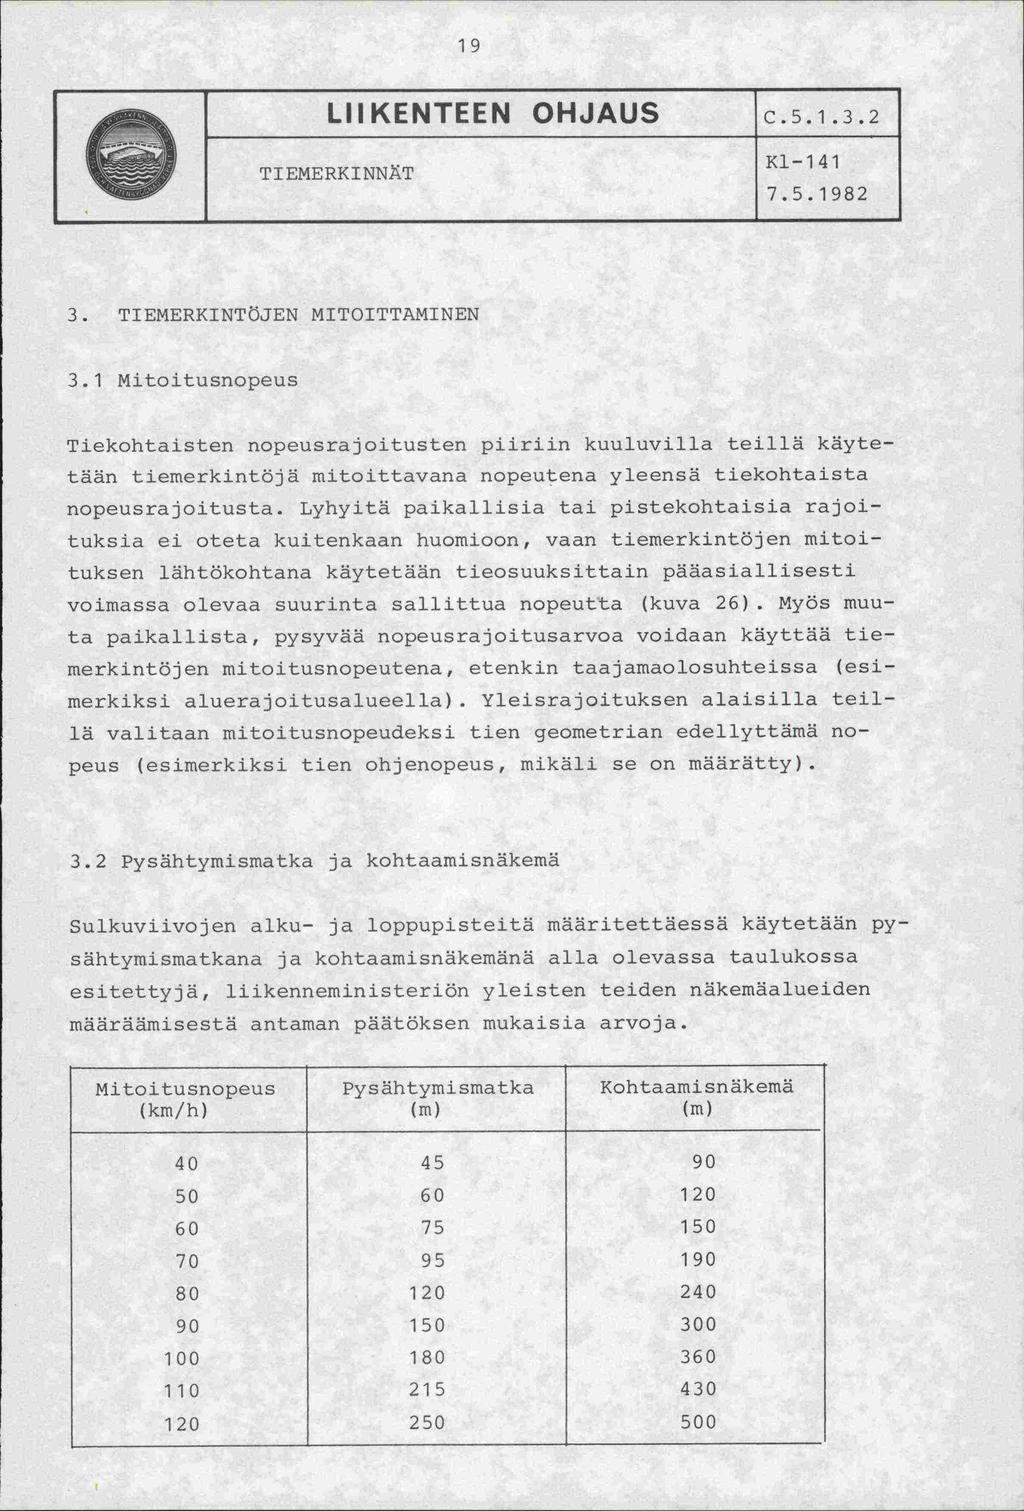 19 LIIKENTEEN OHJAUS TIEMERKINNT c.5.1.3.2 Kl-141 7.5.1982 3. TIEMERKINTÖJEN MITOITTAMINEN 3.